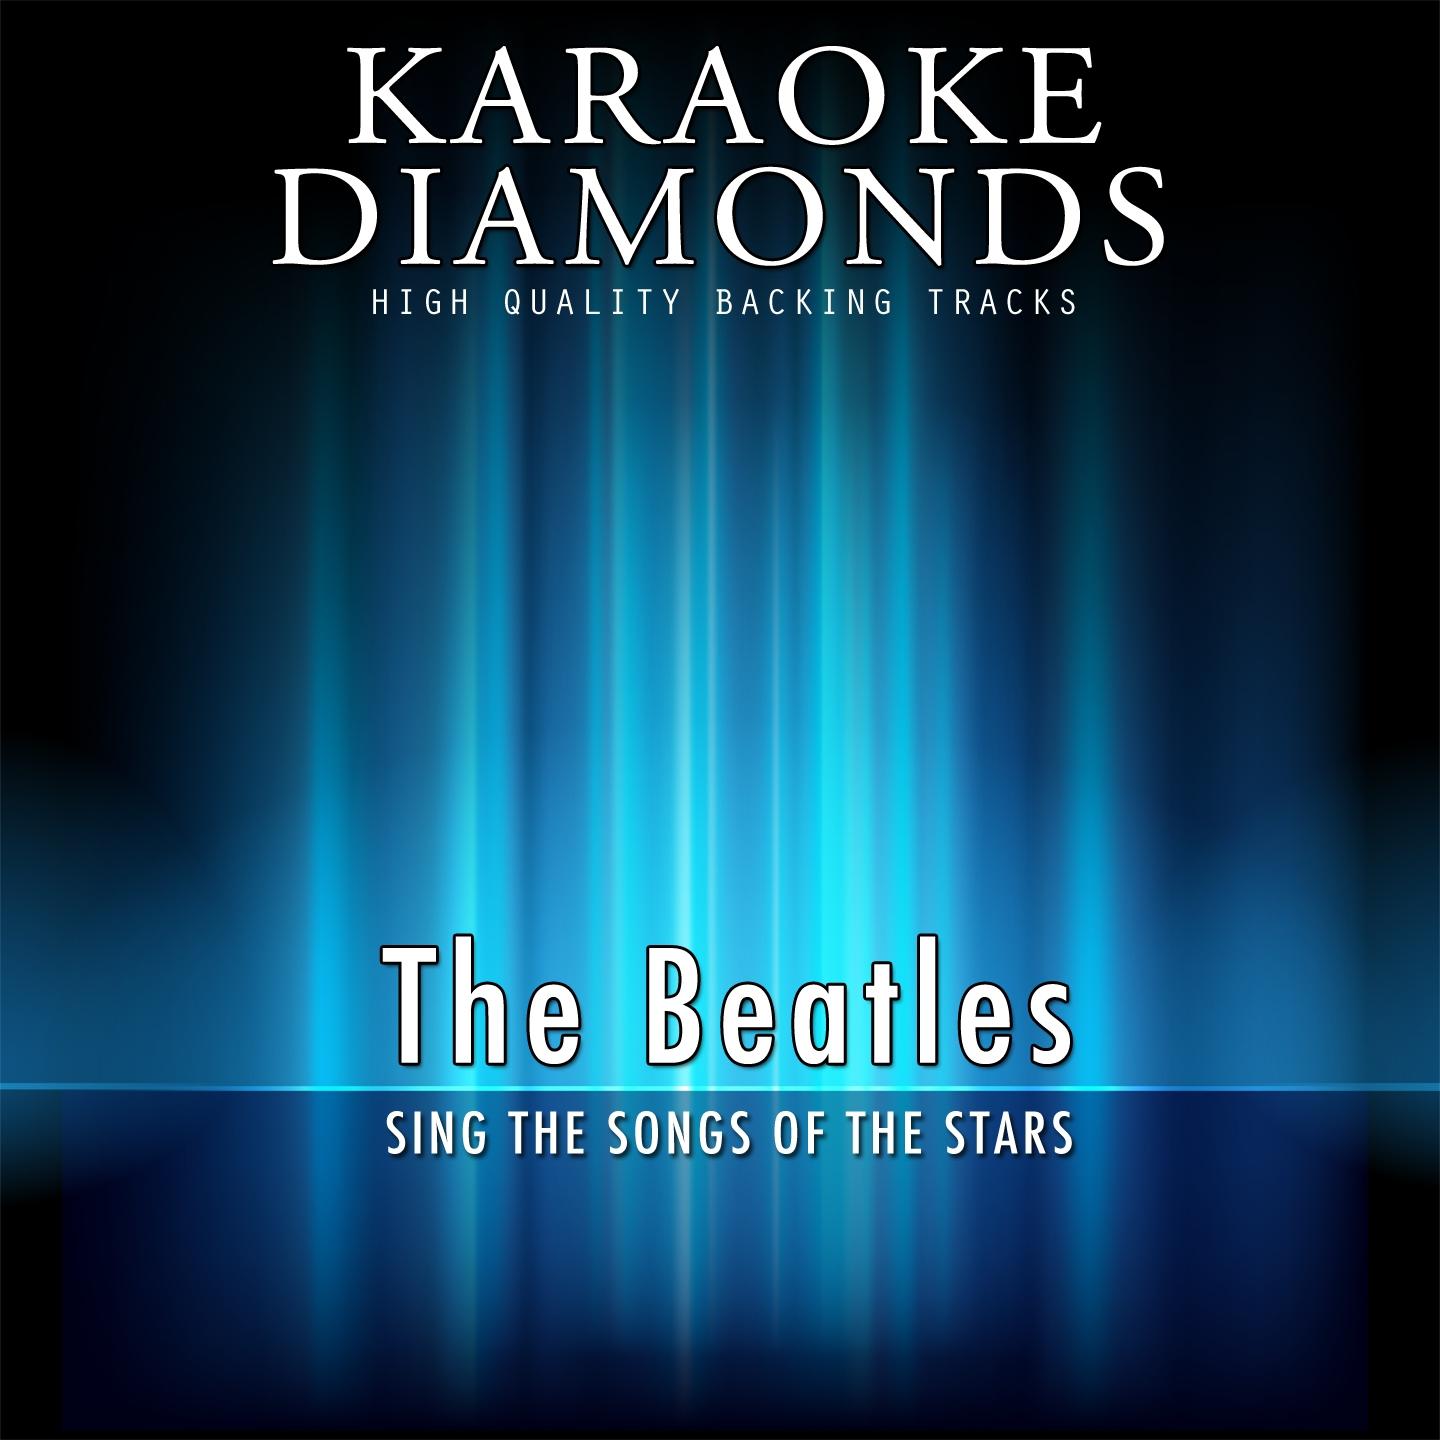 The Best Songs of The Beatles (Karaoke Version)